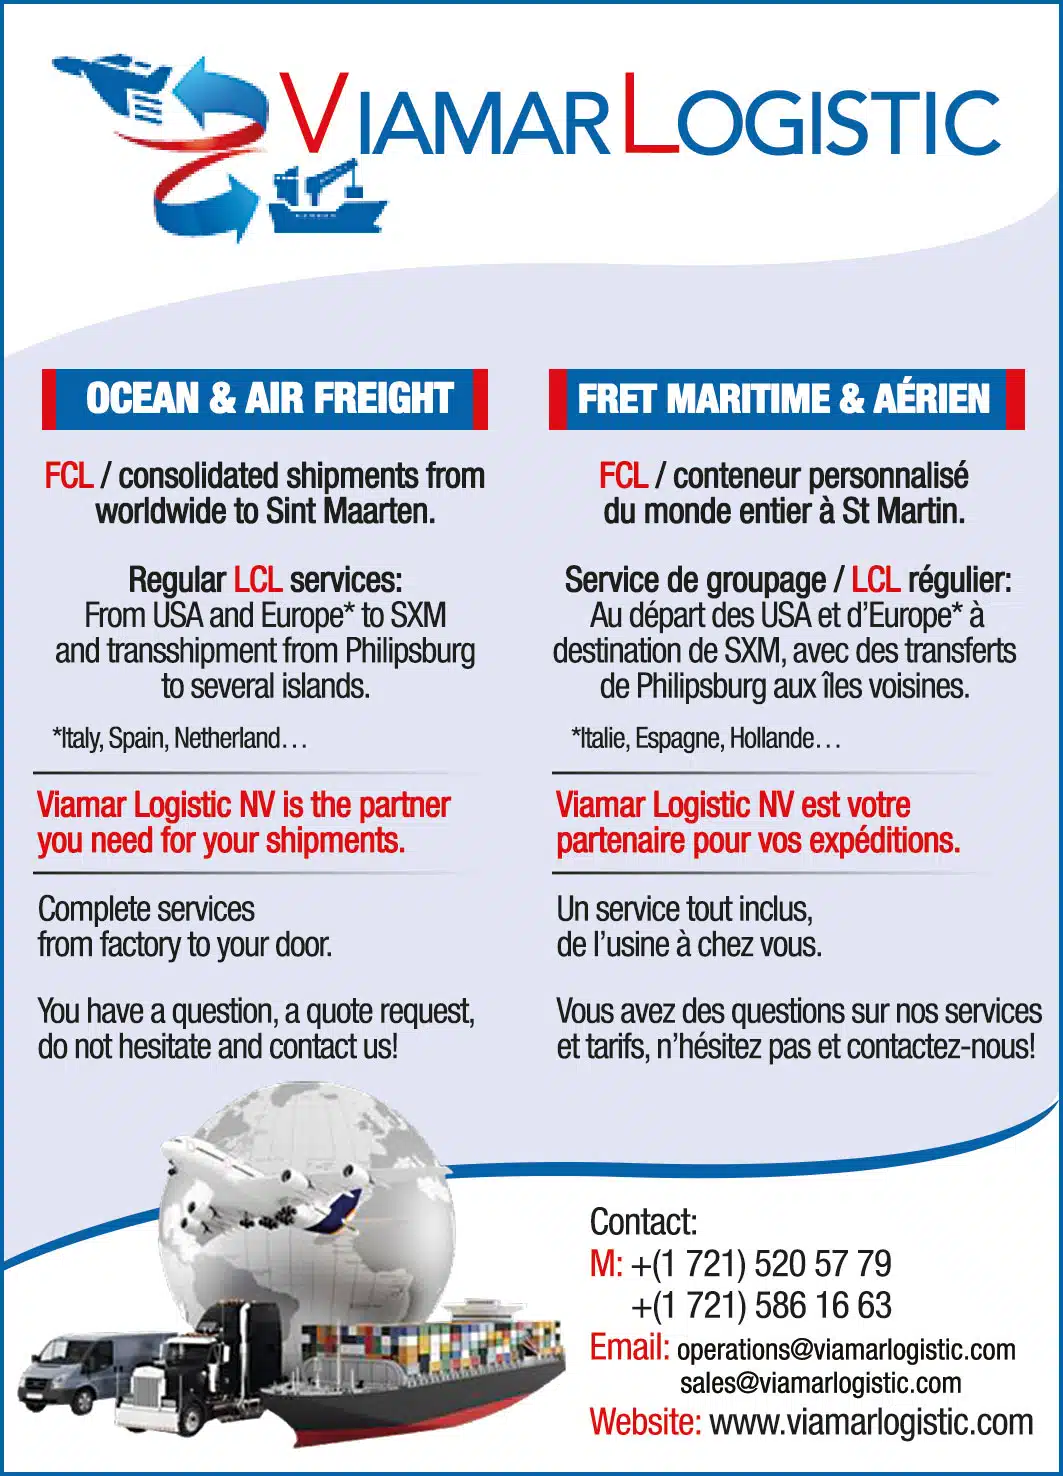 St Maarten Telephone Directory - Viamar Logistic